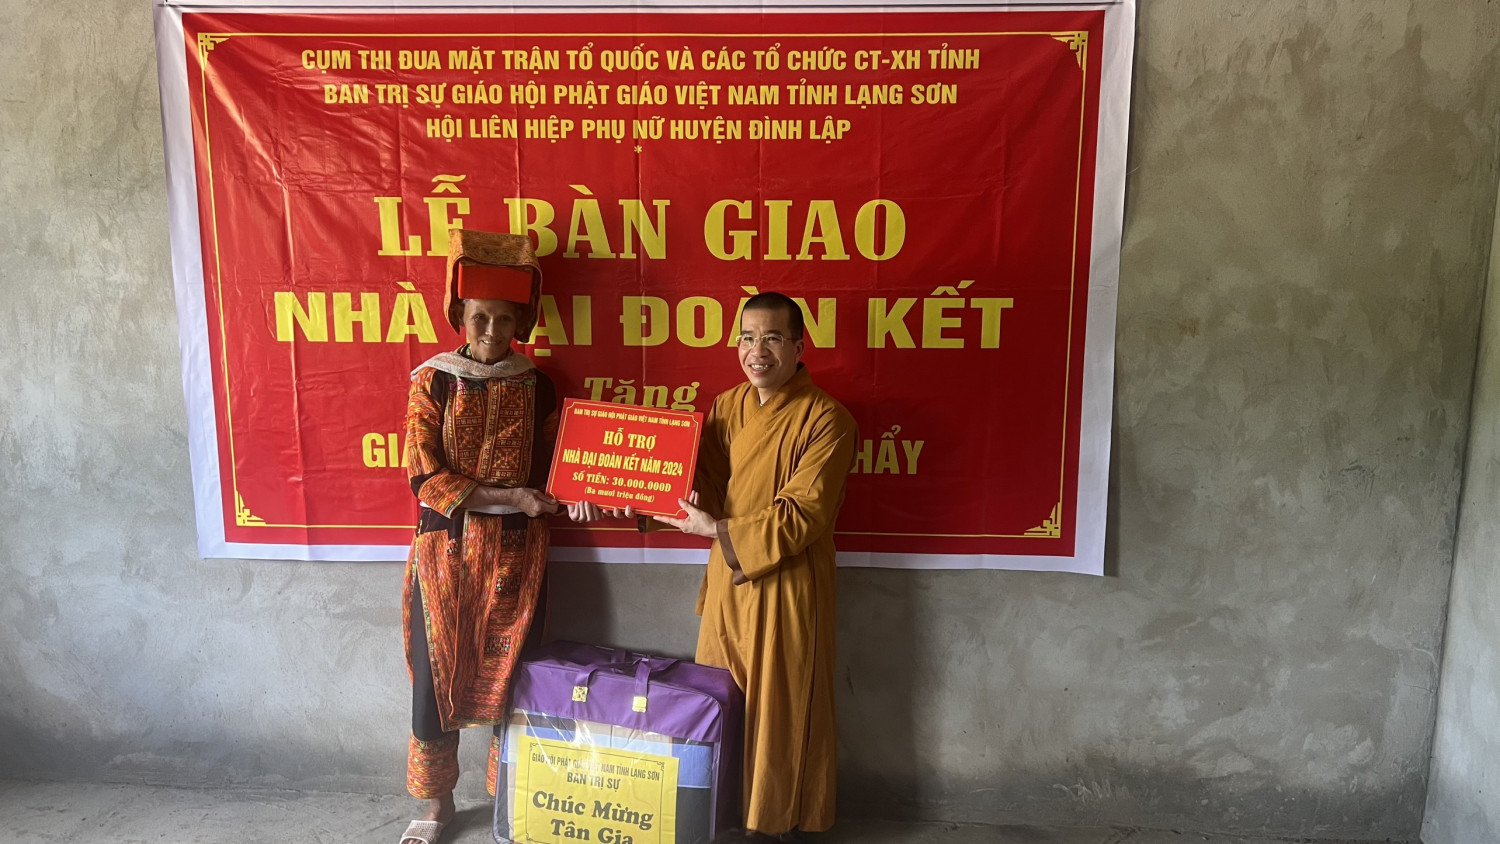 Lạng Sơn: Lễ bàn giao nhà Đại đoàn kết tại huyện Đình Lập